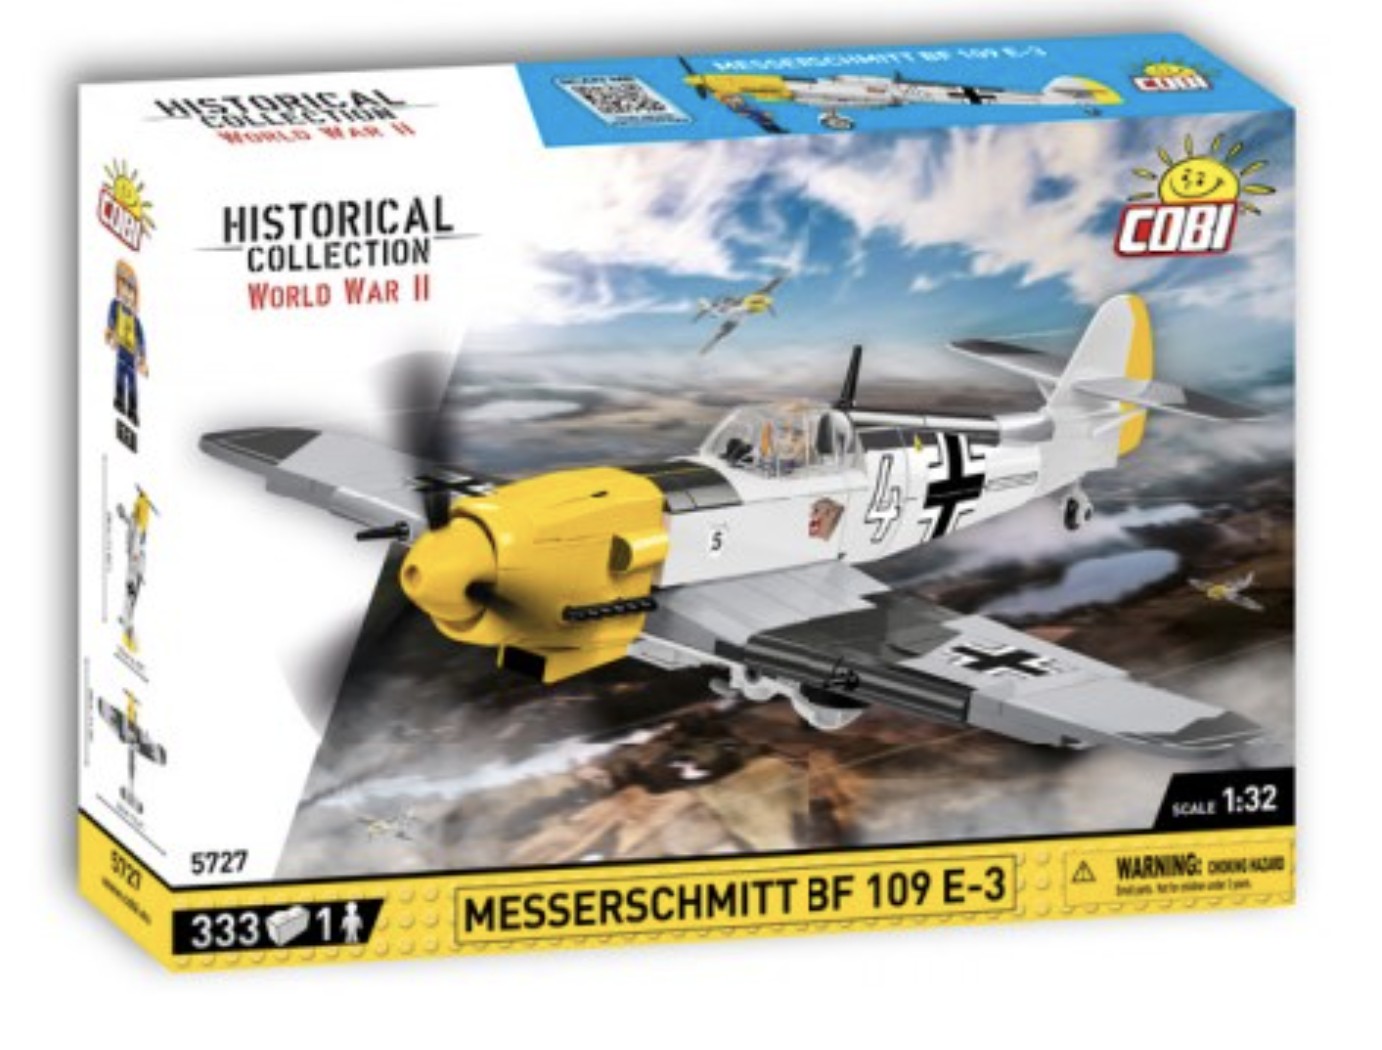 5727 - Messerschmitt Bf 109 E-3